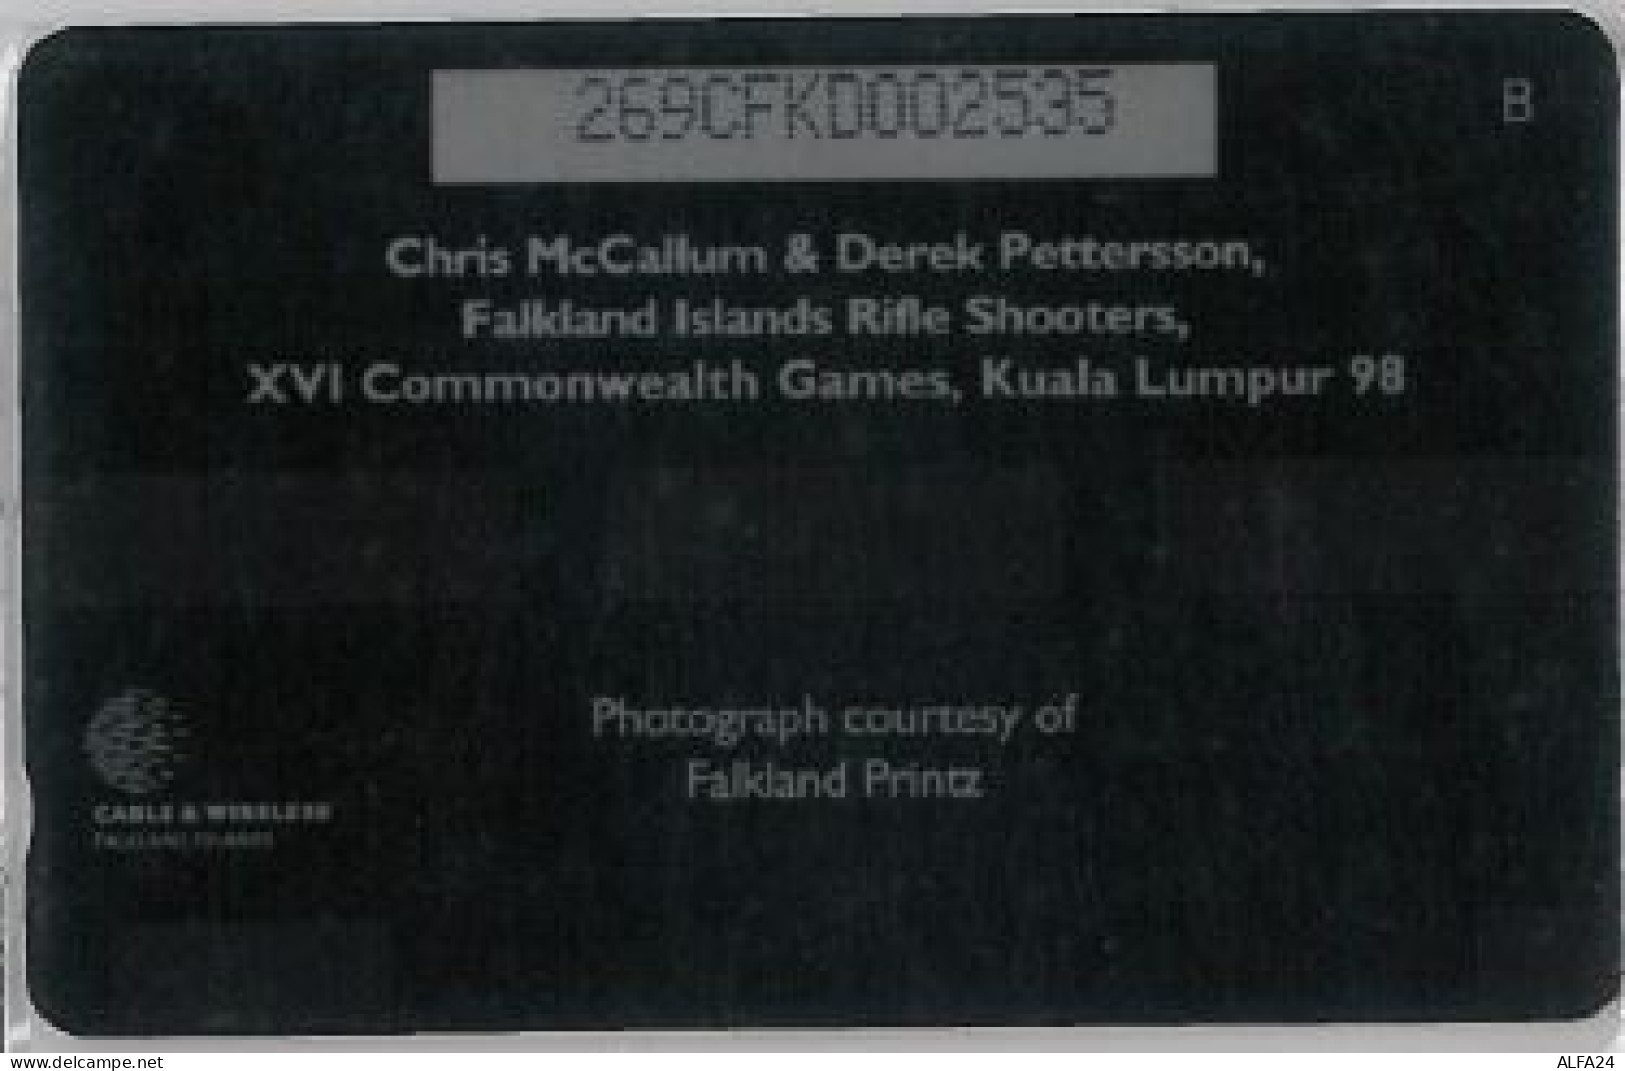 PHONE CARD -FALKLAND (E41.33.3 - Islas Malvinas